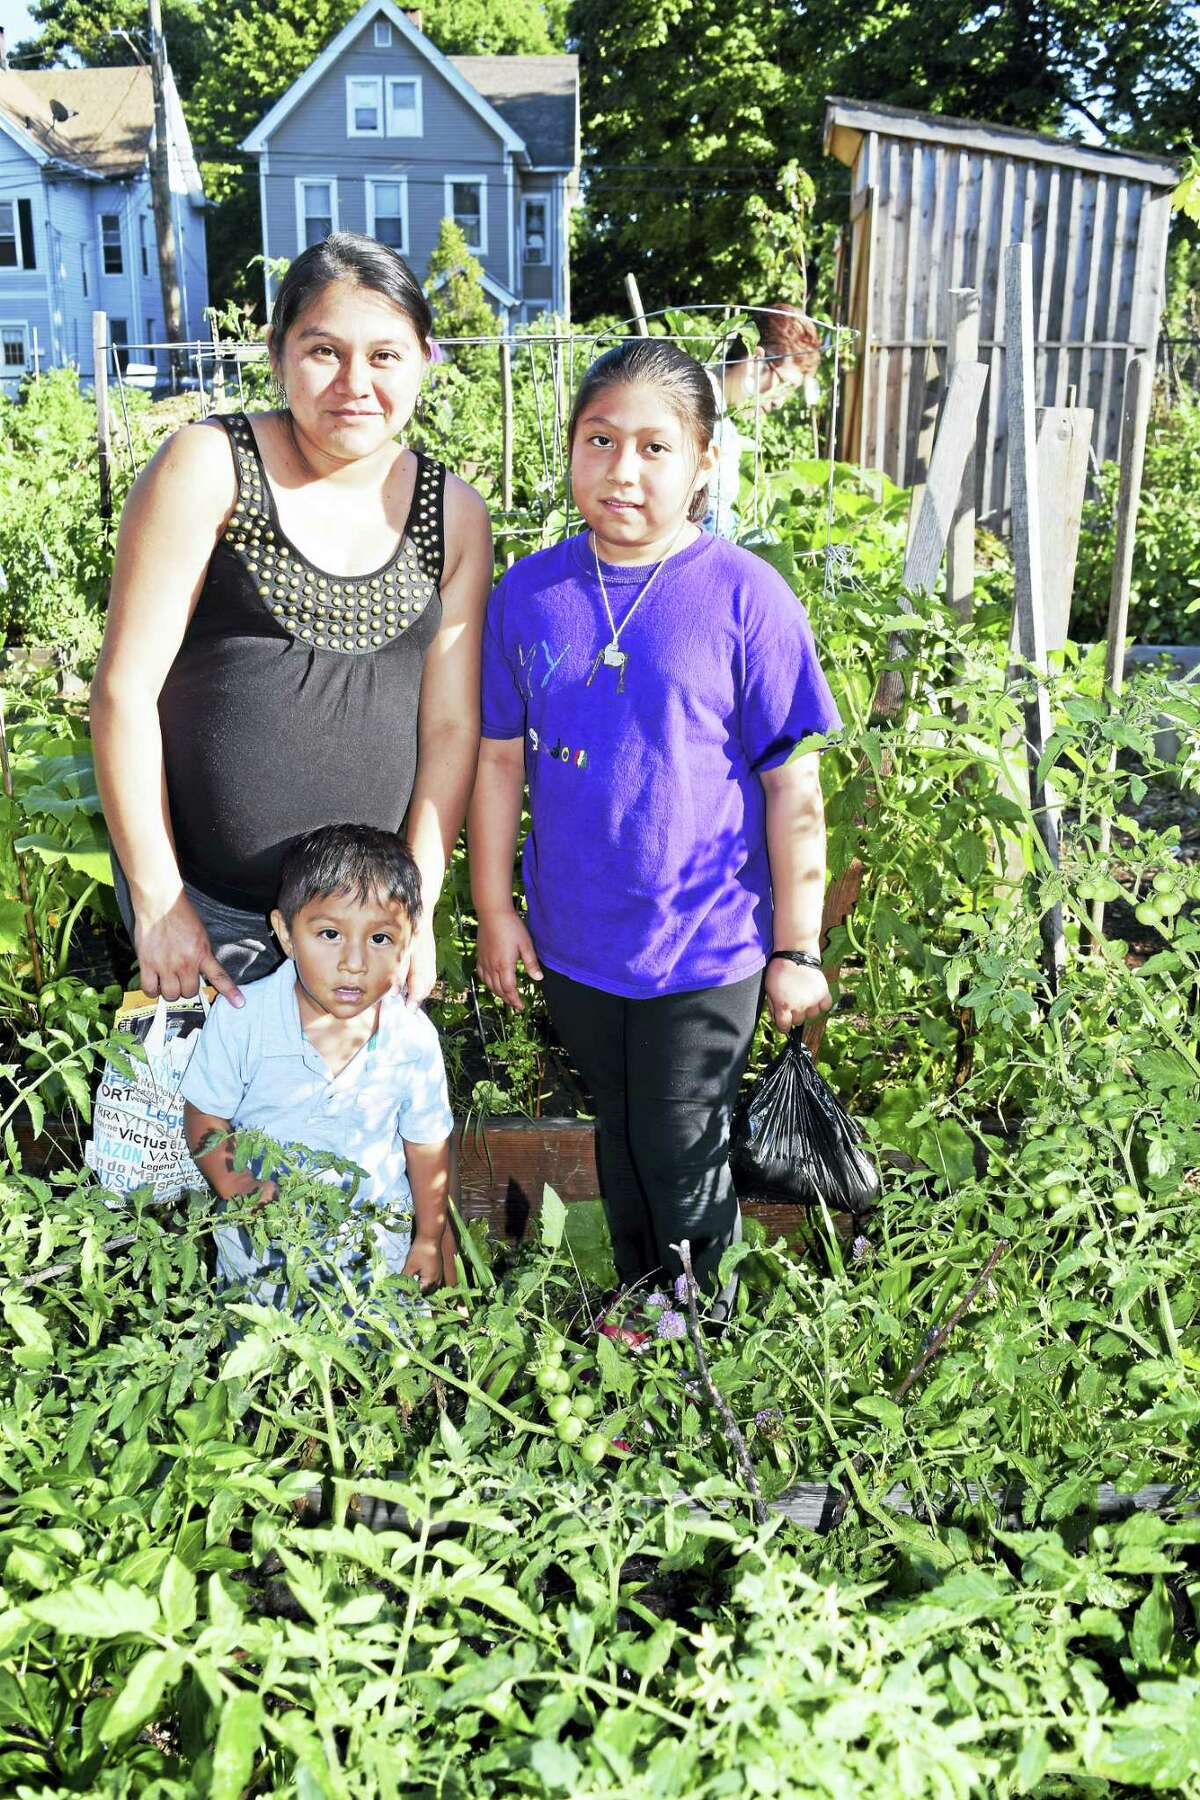 Rocio Rodriguez in her garden alongside her children Amy and Leonardo Rodriguez